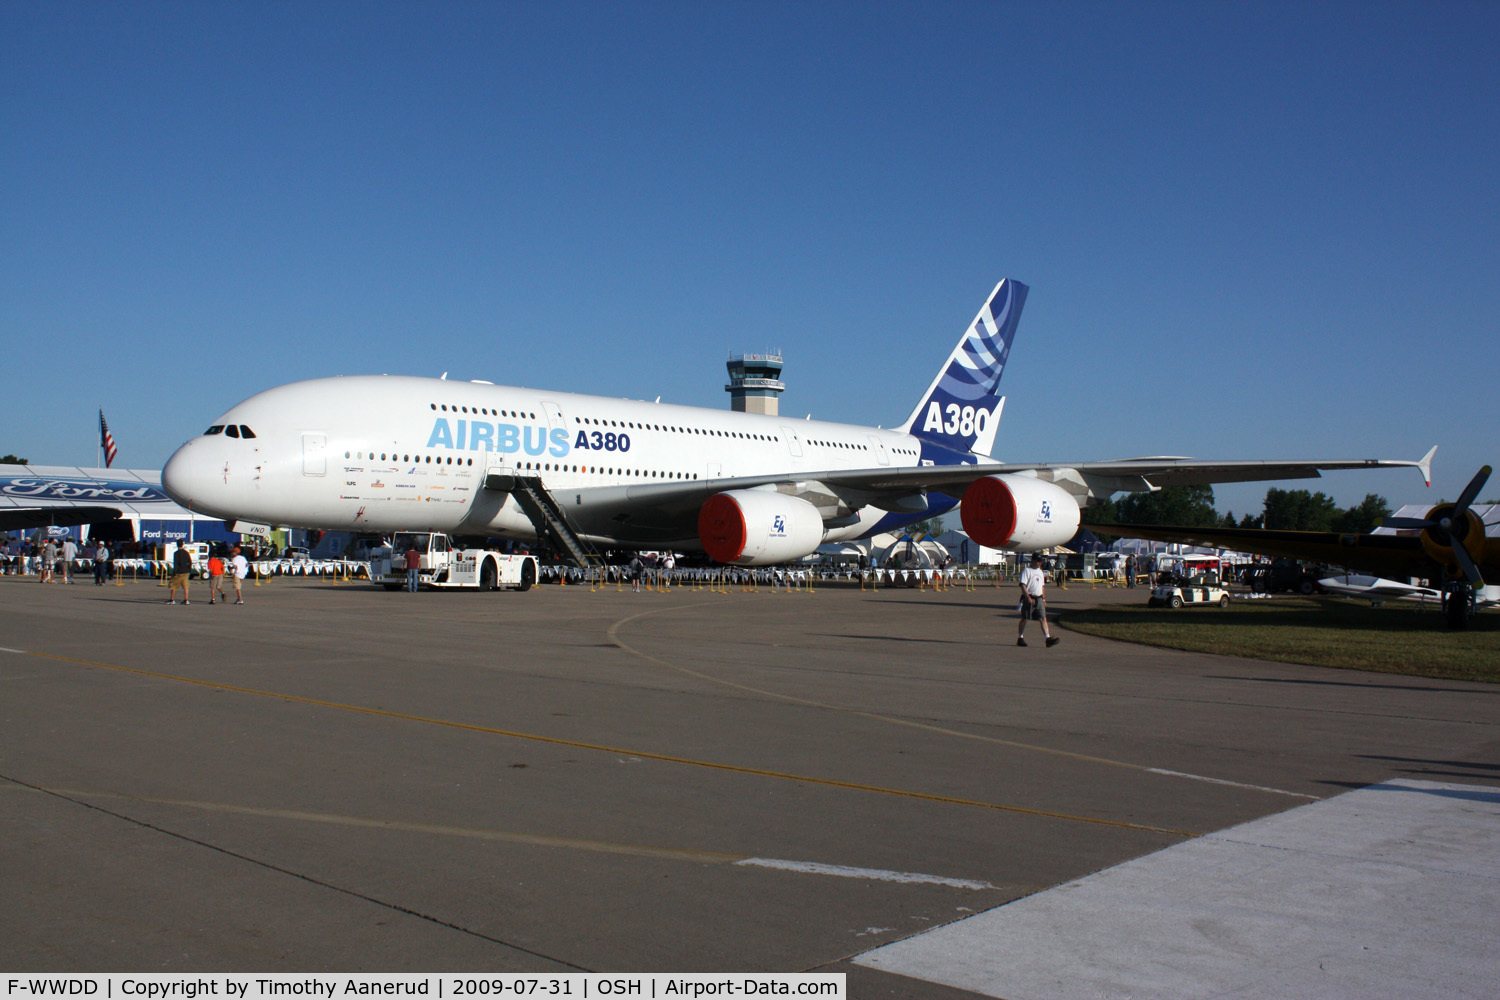 F-WWDD, 2005 Airbus A380-861 C/N 004, 2005 Airbus Industires A380-861, c/n: 004